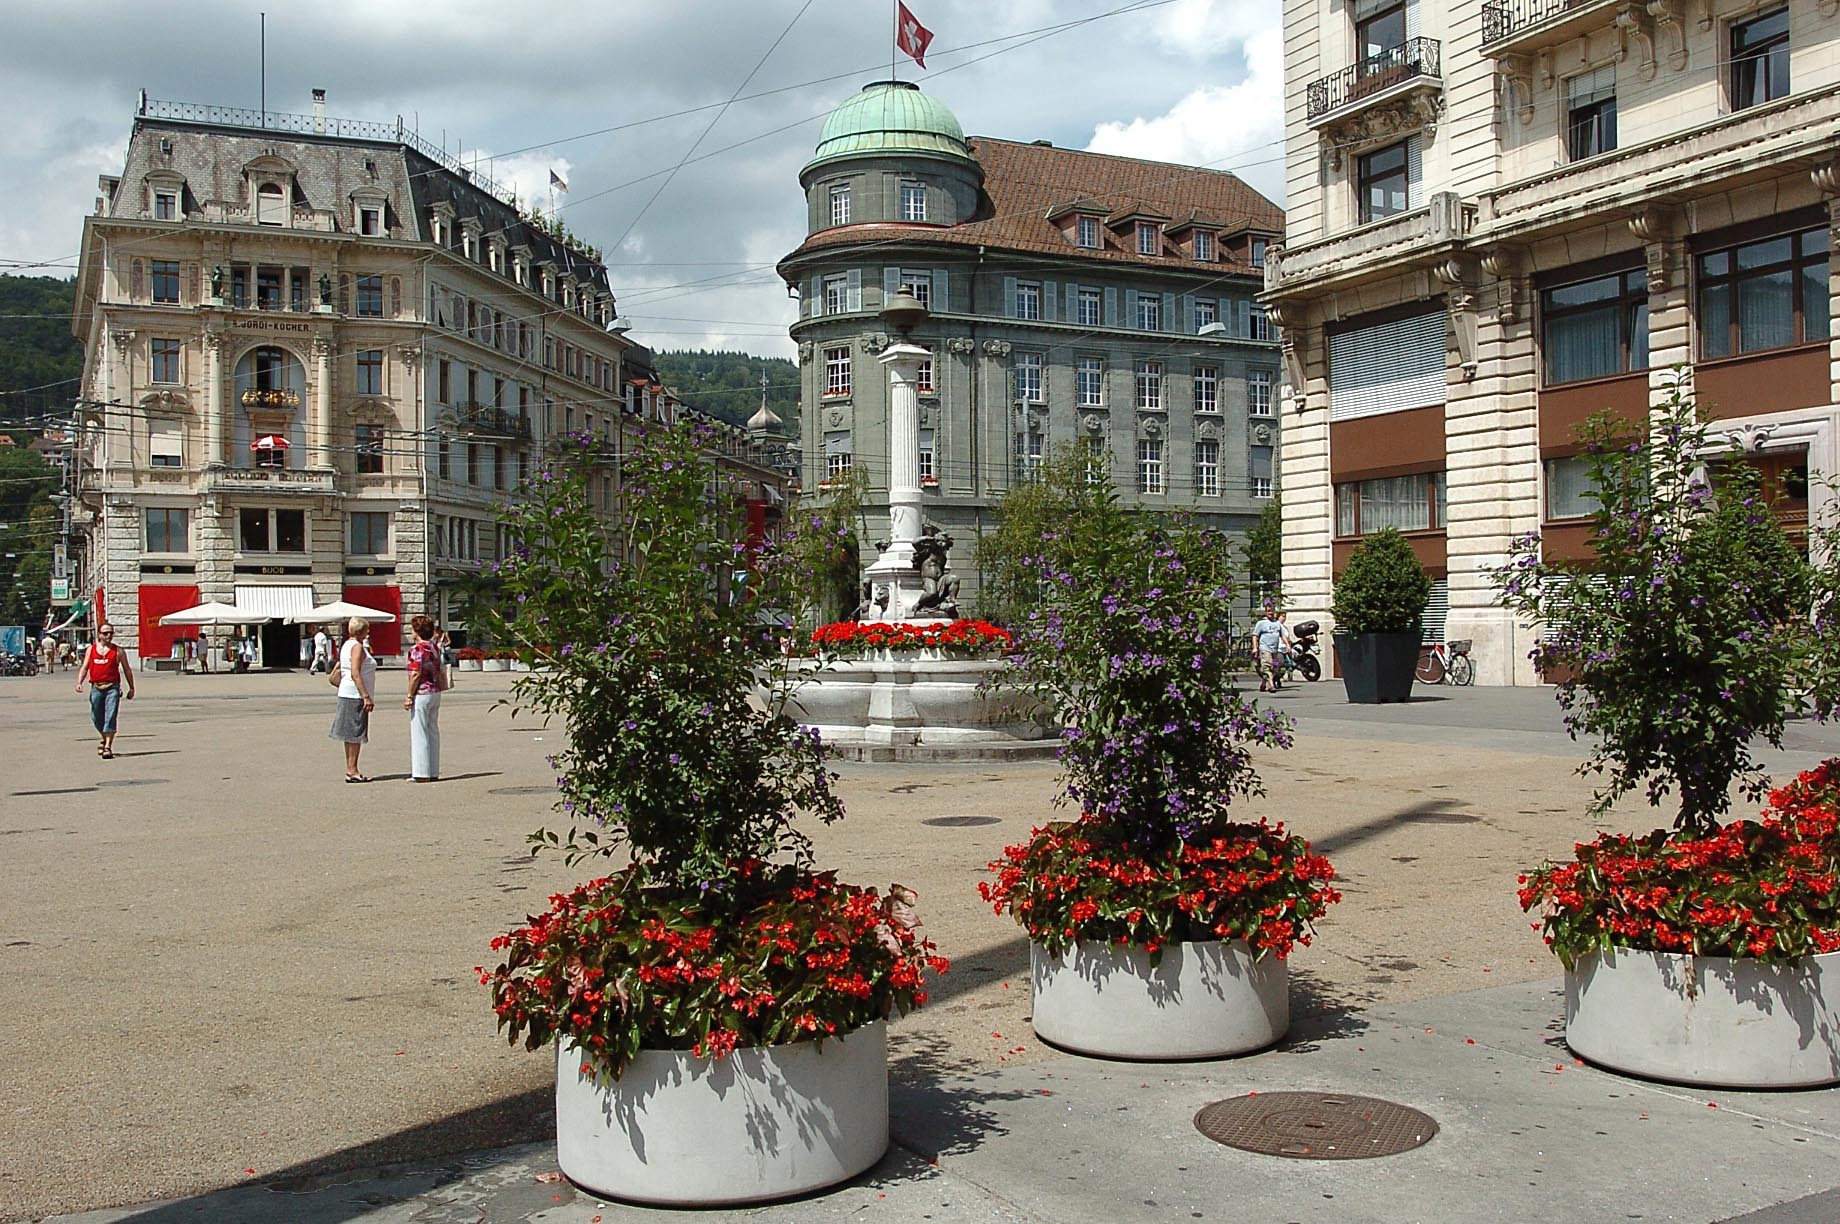 Le projet de loi entend renforcer le statut des francophones (ici la place centrale de Bienne) dans le canton.